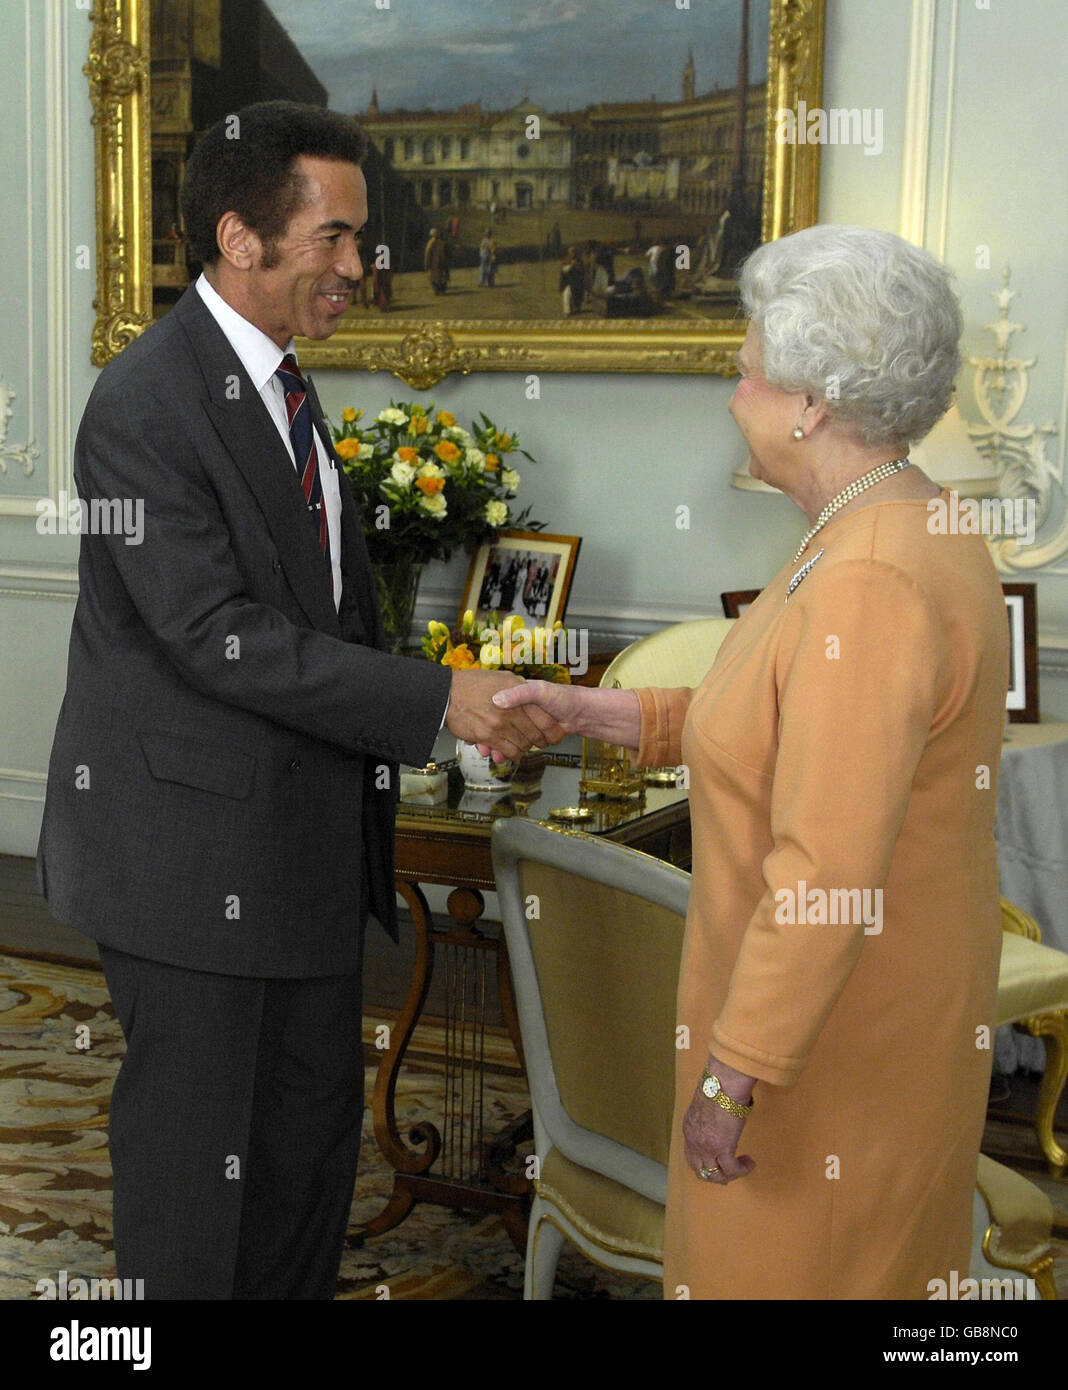 La reine Elizabeth II de Grande-Bretagne reçoit son Excellence le Président Khama, de la République du Botswana, à Buckingham Palace, Londres. Banque D'Images